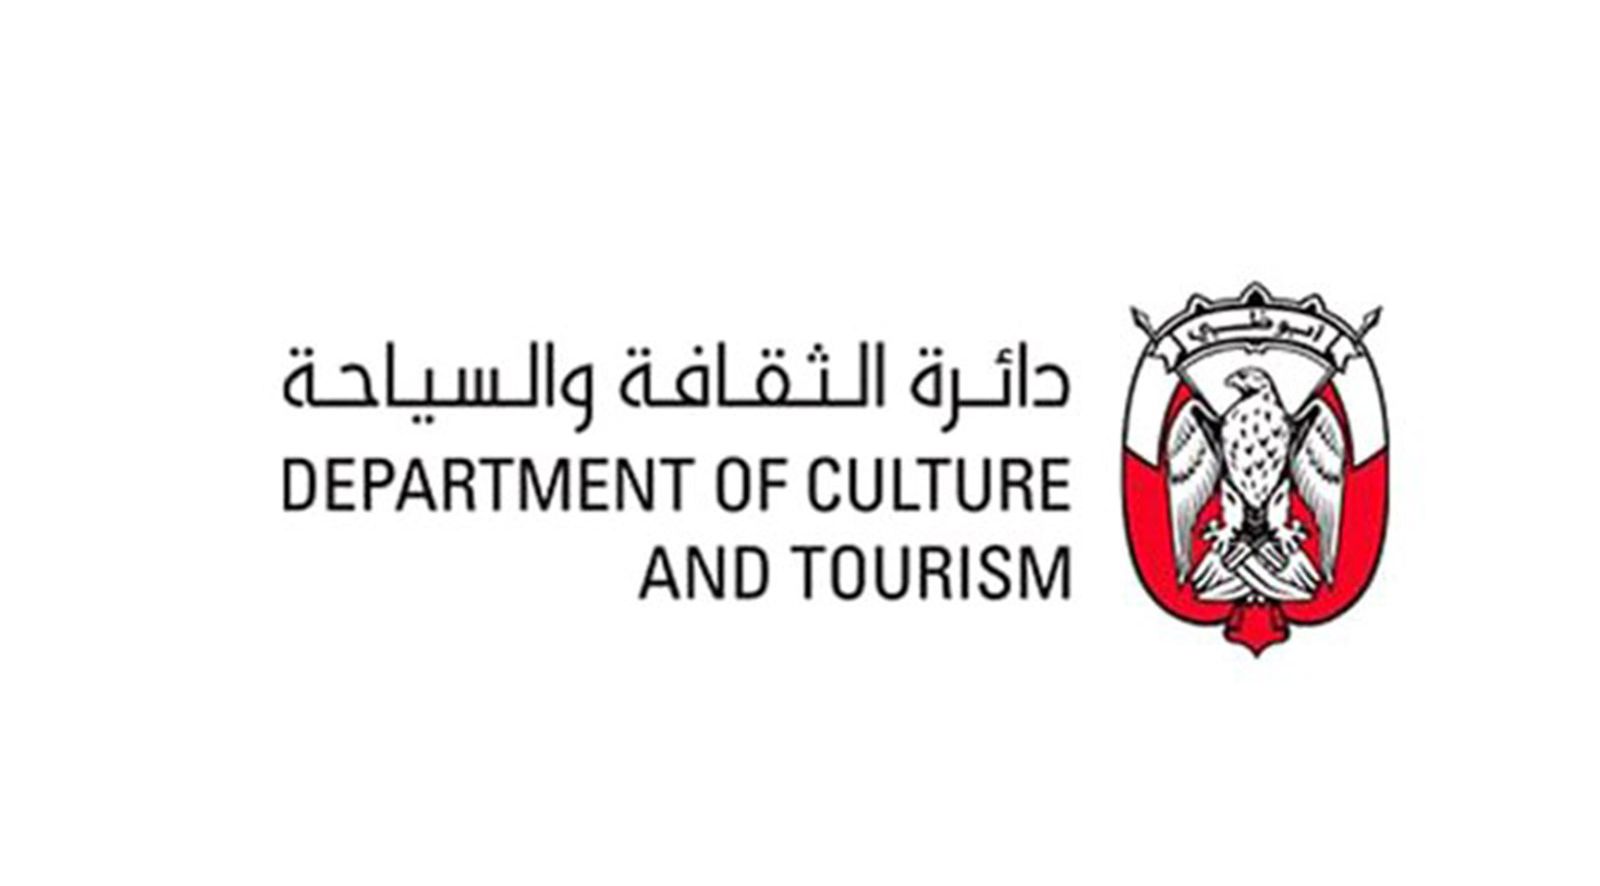 دائرة الثقافة والسياحة بأبوظبي تعلن عن دول القائمة الخضراء المحدثة اعتباراً من الأربعاء 1 سبتمبر 2021